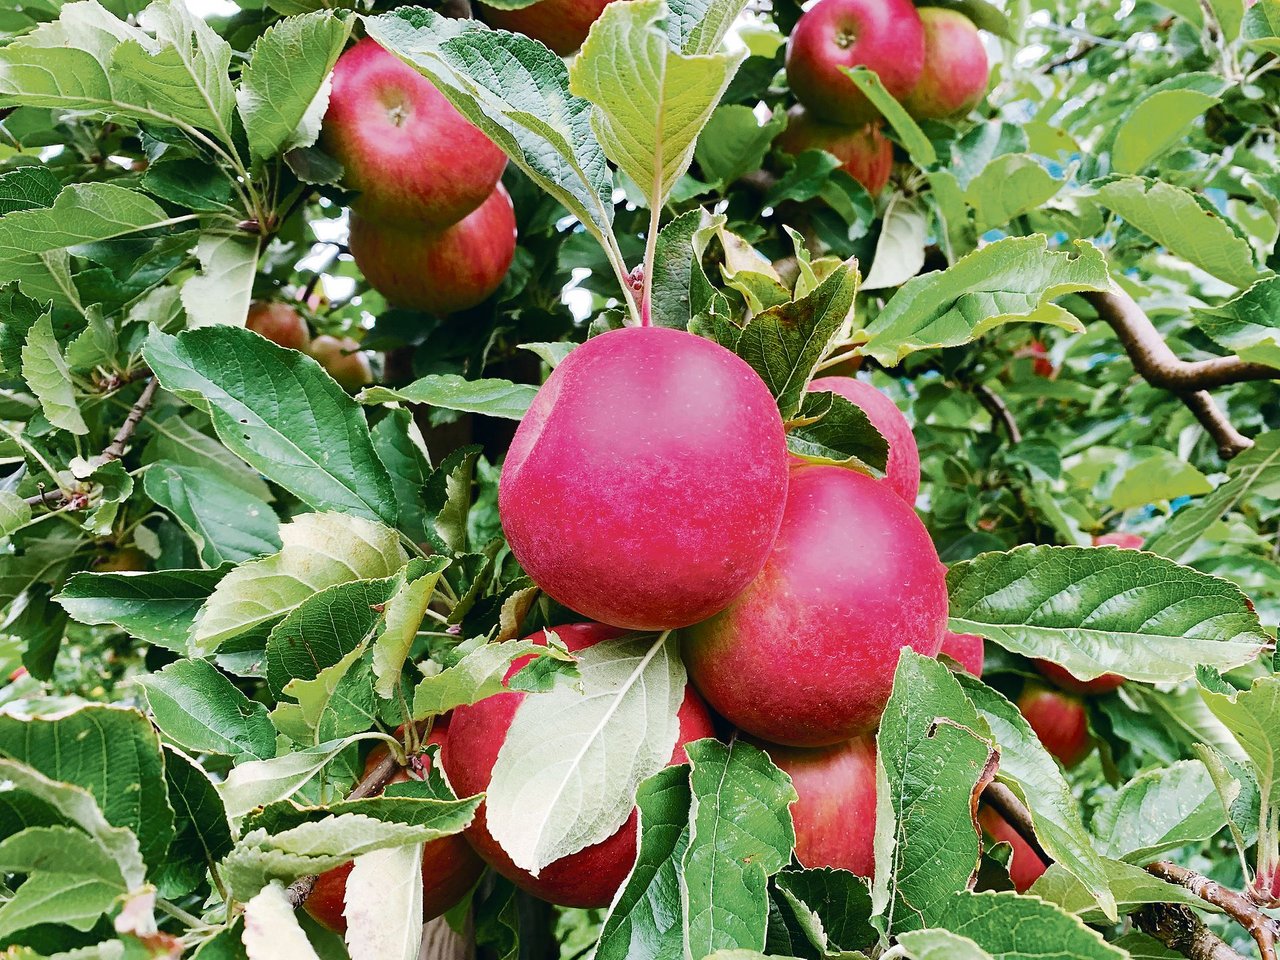 Die meisten Obstbauern würden bei Annahme der Trinkwasser-Initiative aus dem ÖLN aussteigen. Äpfel würden dann intensiver und weniger umweltfreundlich produziert. (Bild Josef Scherer)